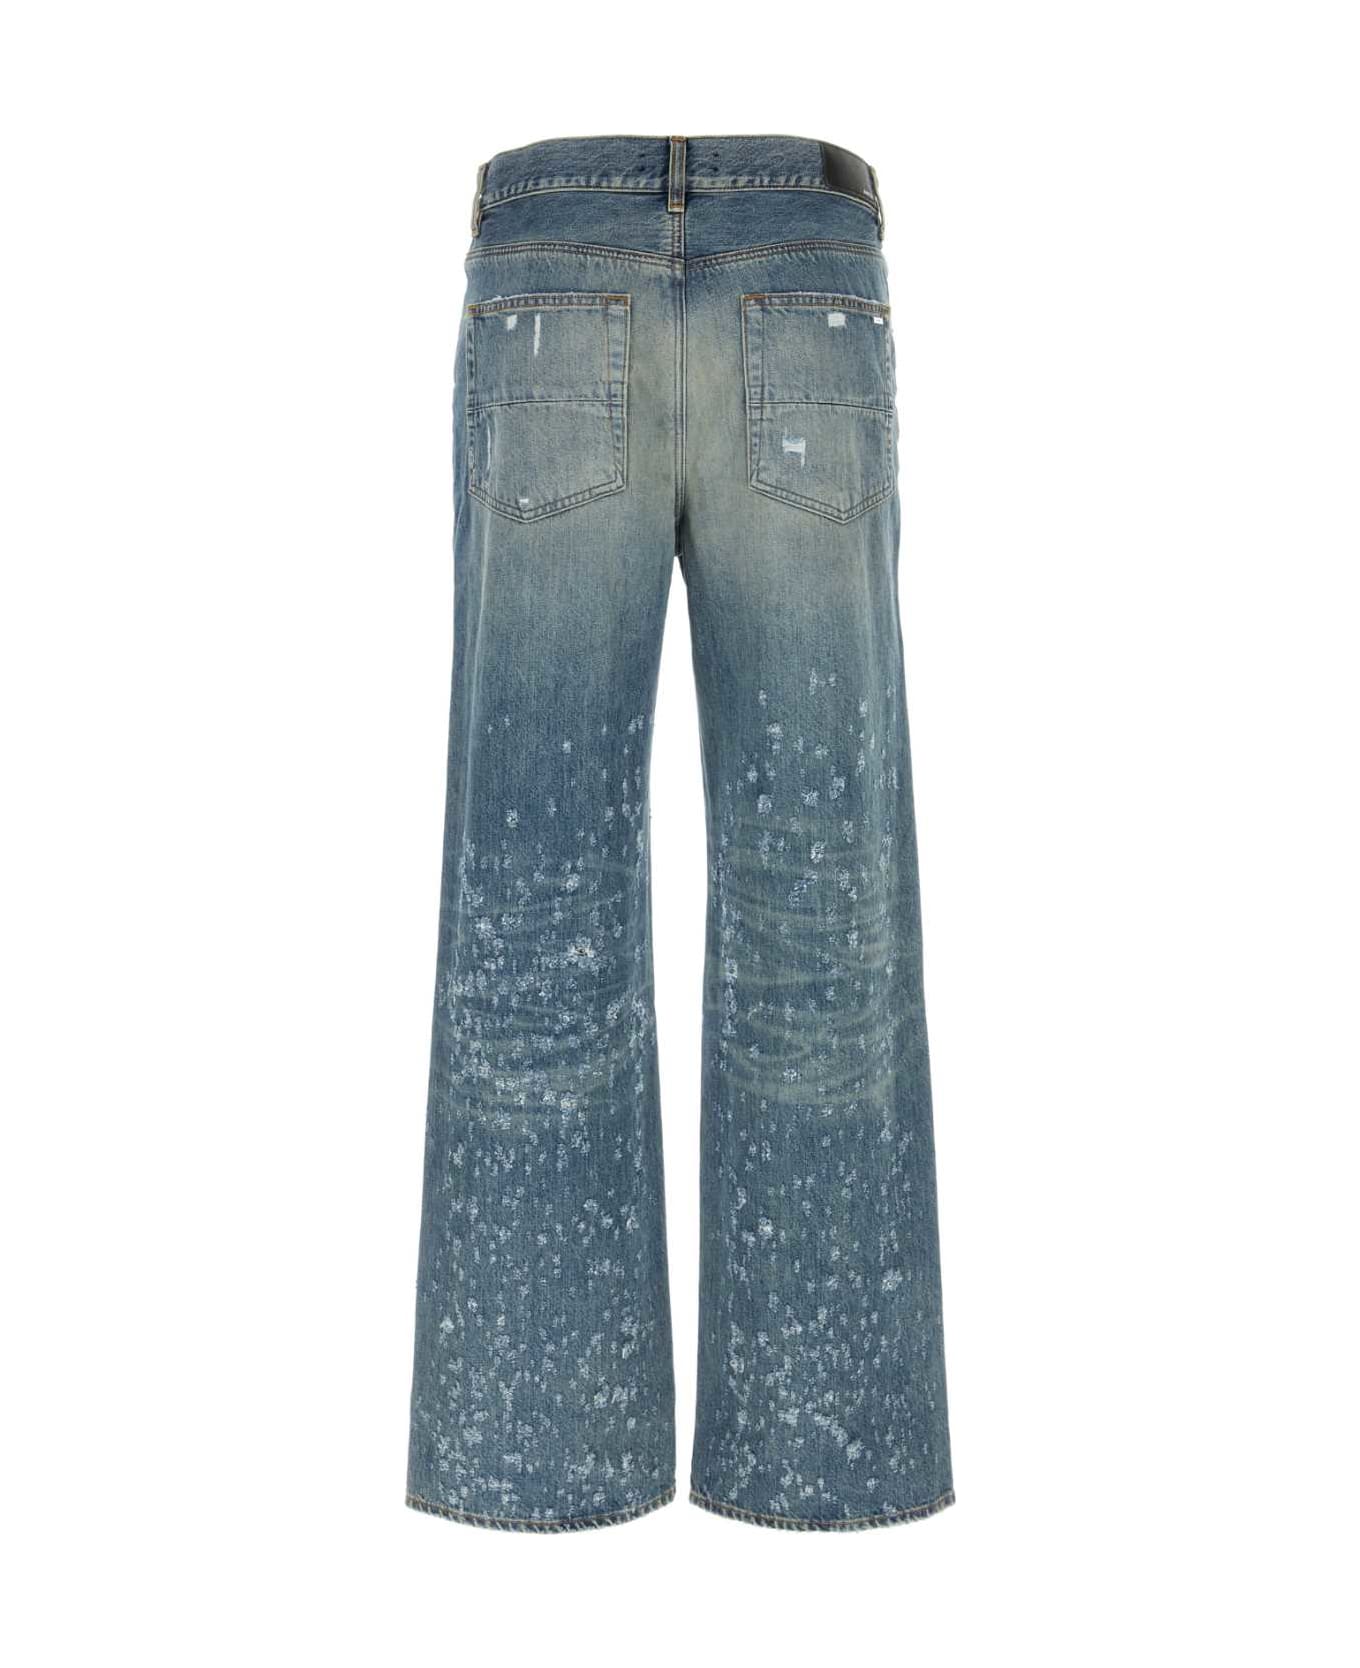 AMIRI Denim Jeans - INDIGO